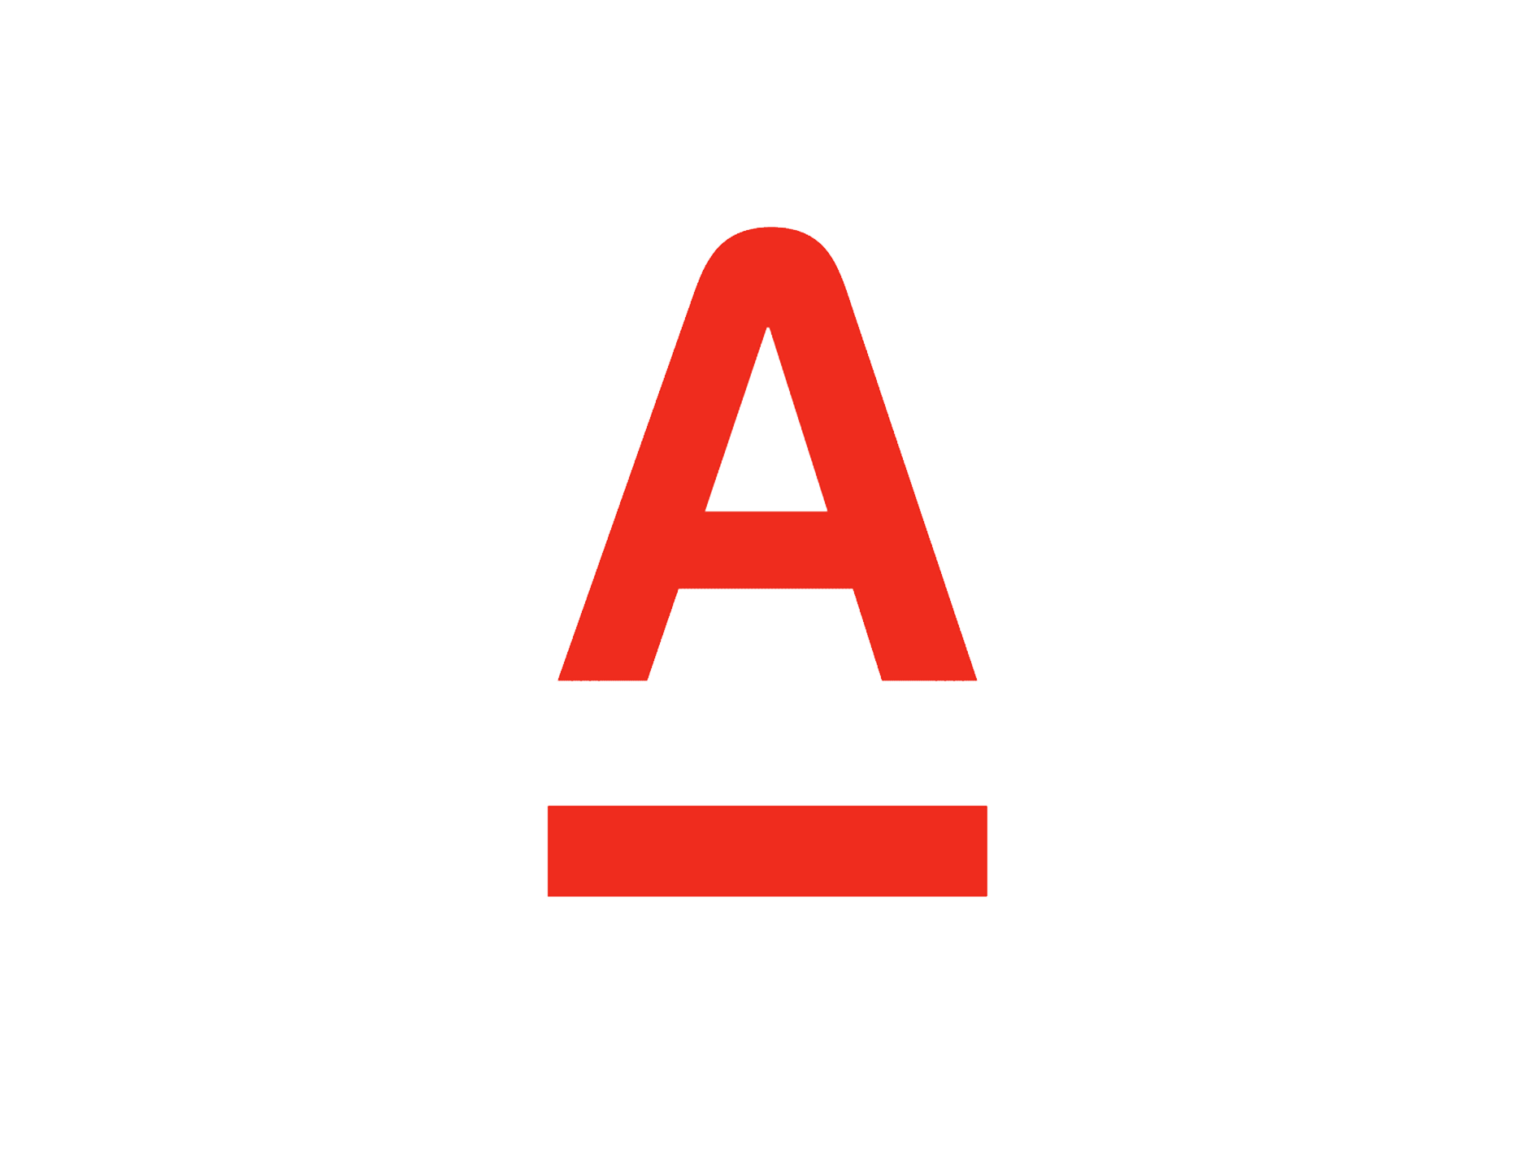 Альфа банк логотип 1990. Первый логотип Альфа банка. Альфа банк лого старое. Альфа клик значок.